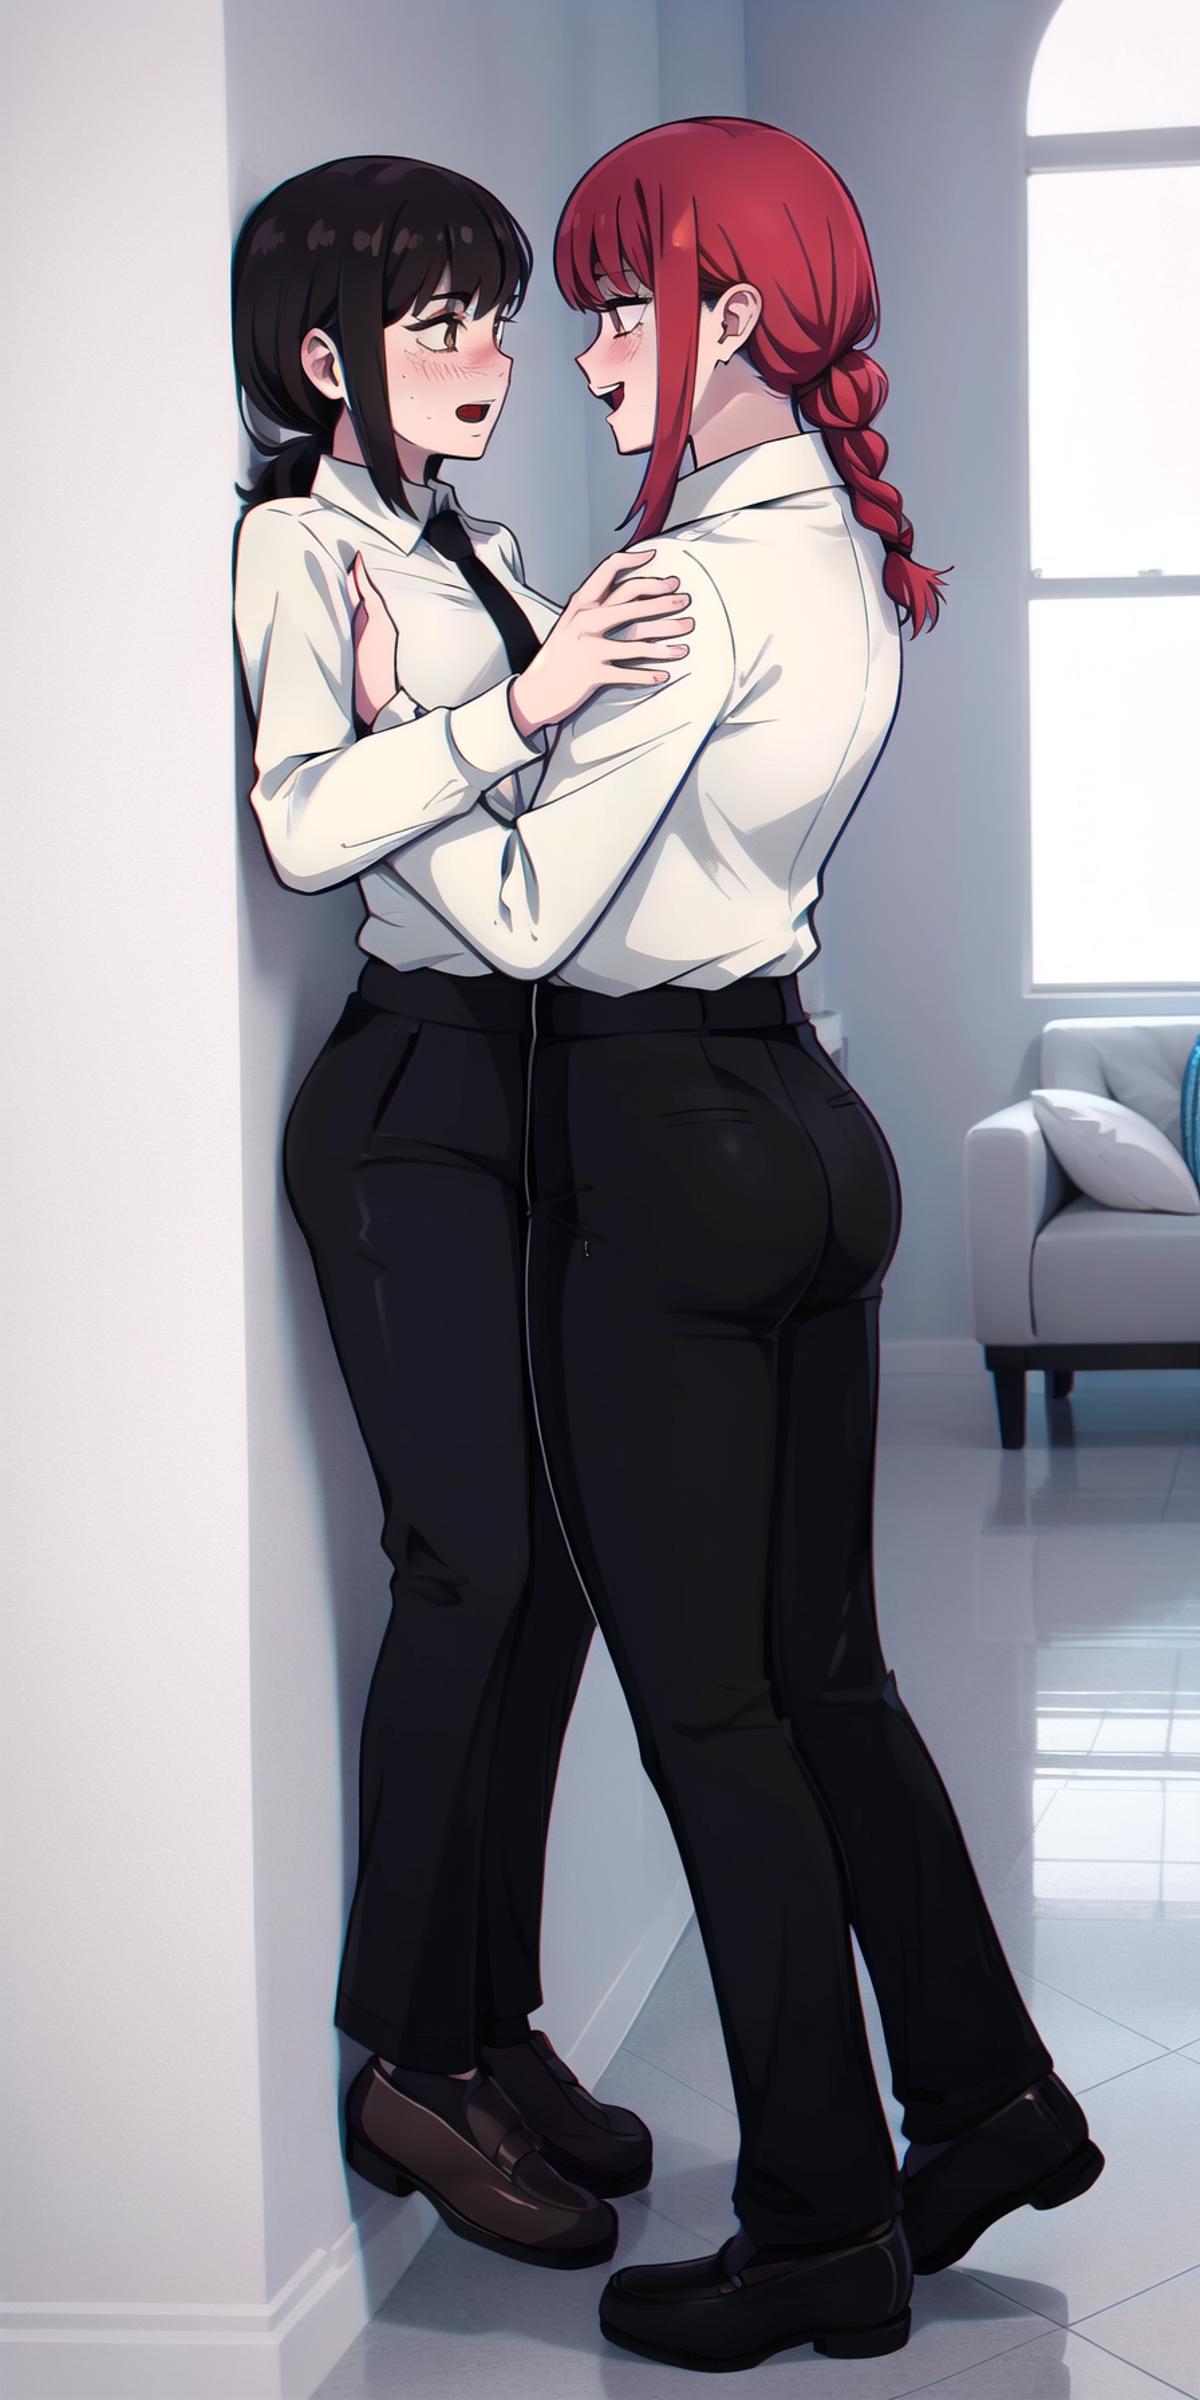 Two people in black pants hugging in a room.